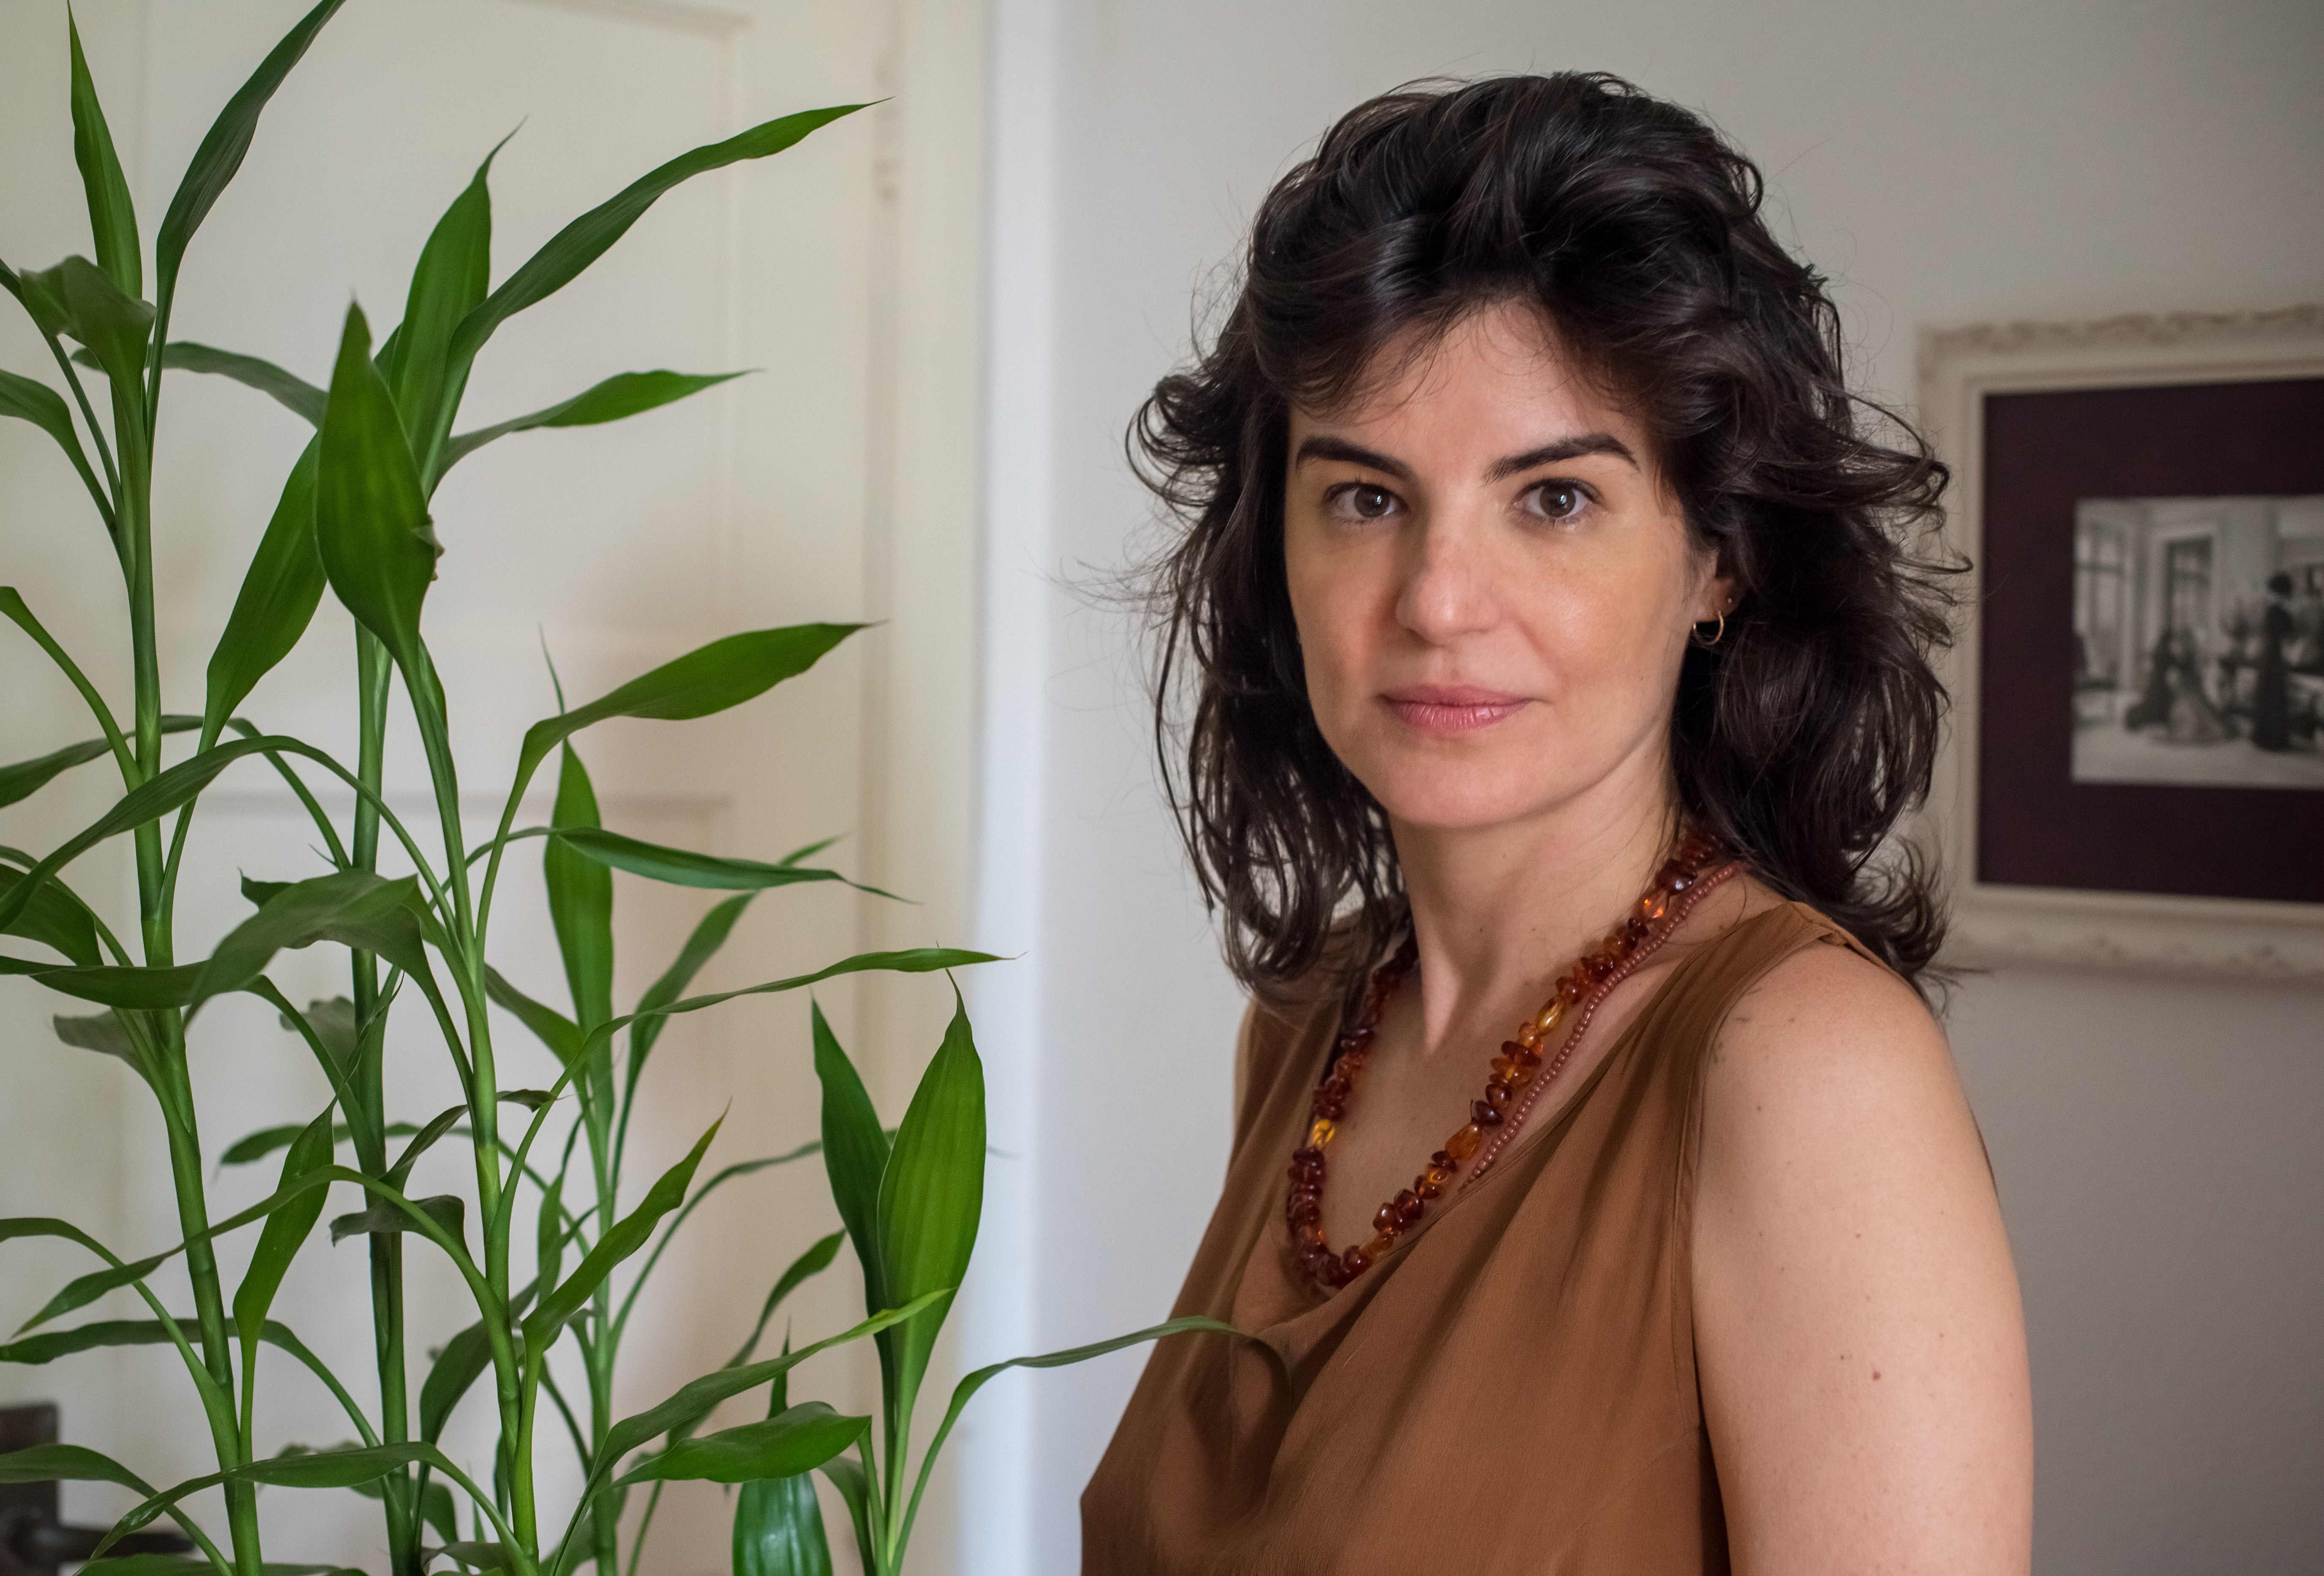 A autora Carolina Casarin olhando com expressão facial séria para a câmera, usando blusa marrom e com uma planta ao seu lado